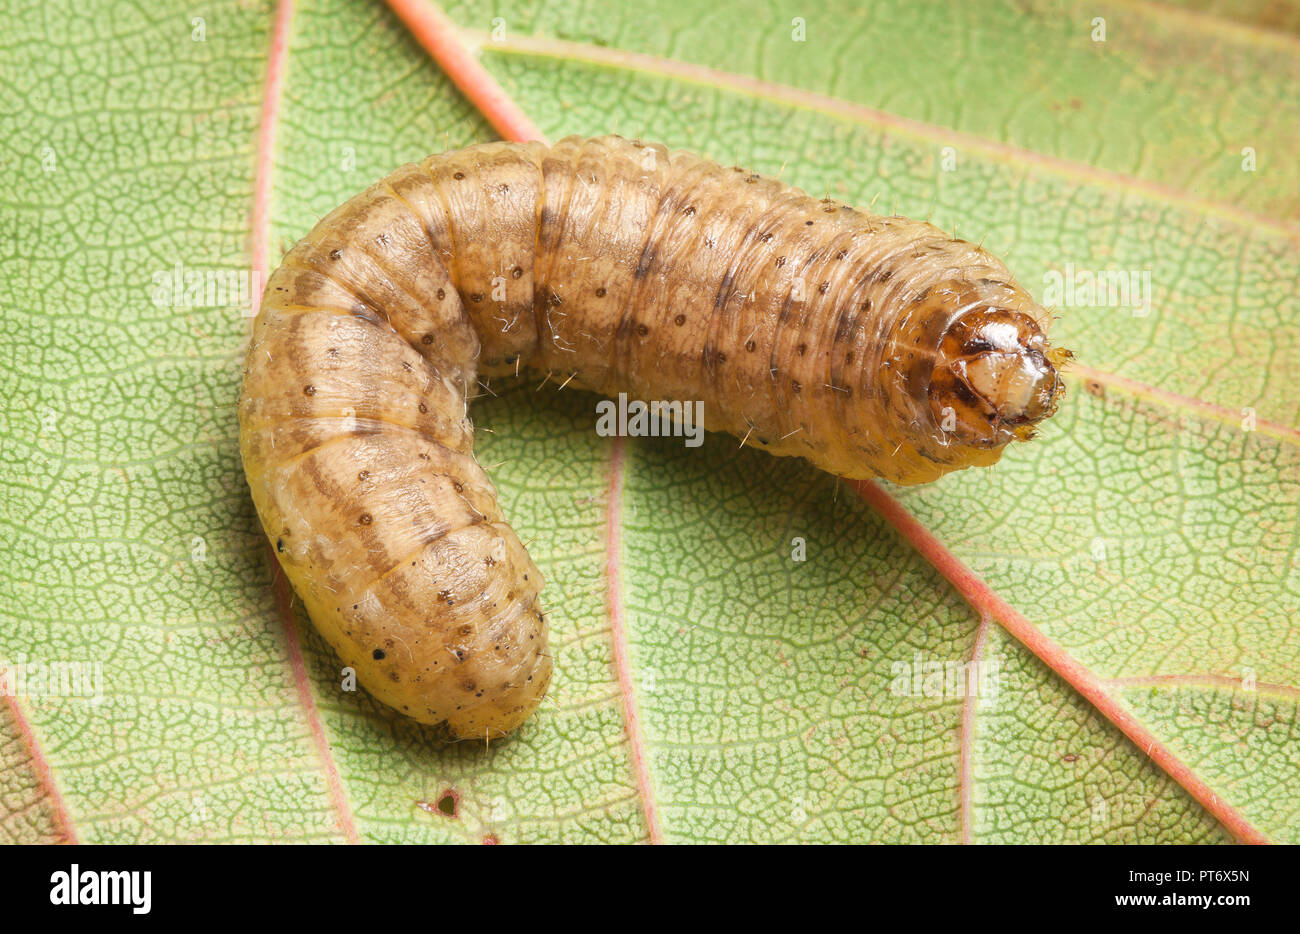 Noctuid moth or owlet moth larva, cutworm or armyworm, on leaf Stock Photo